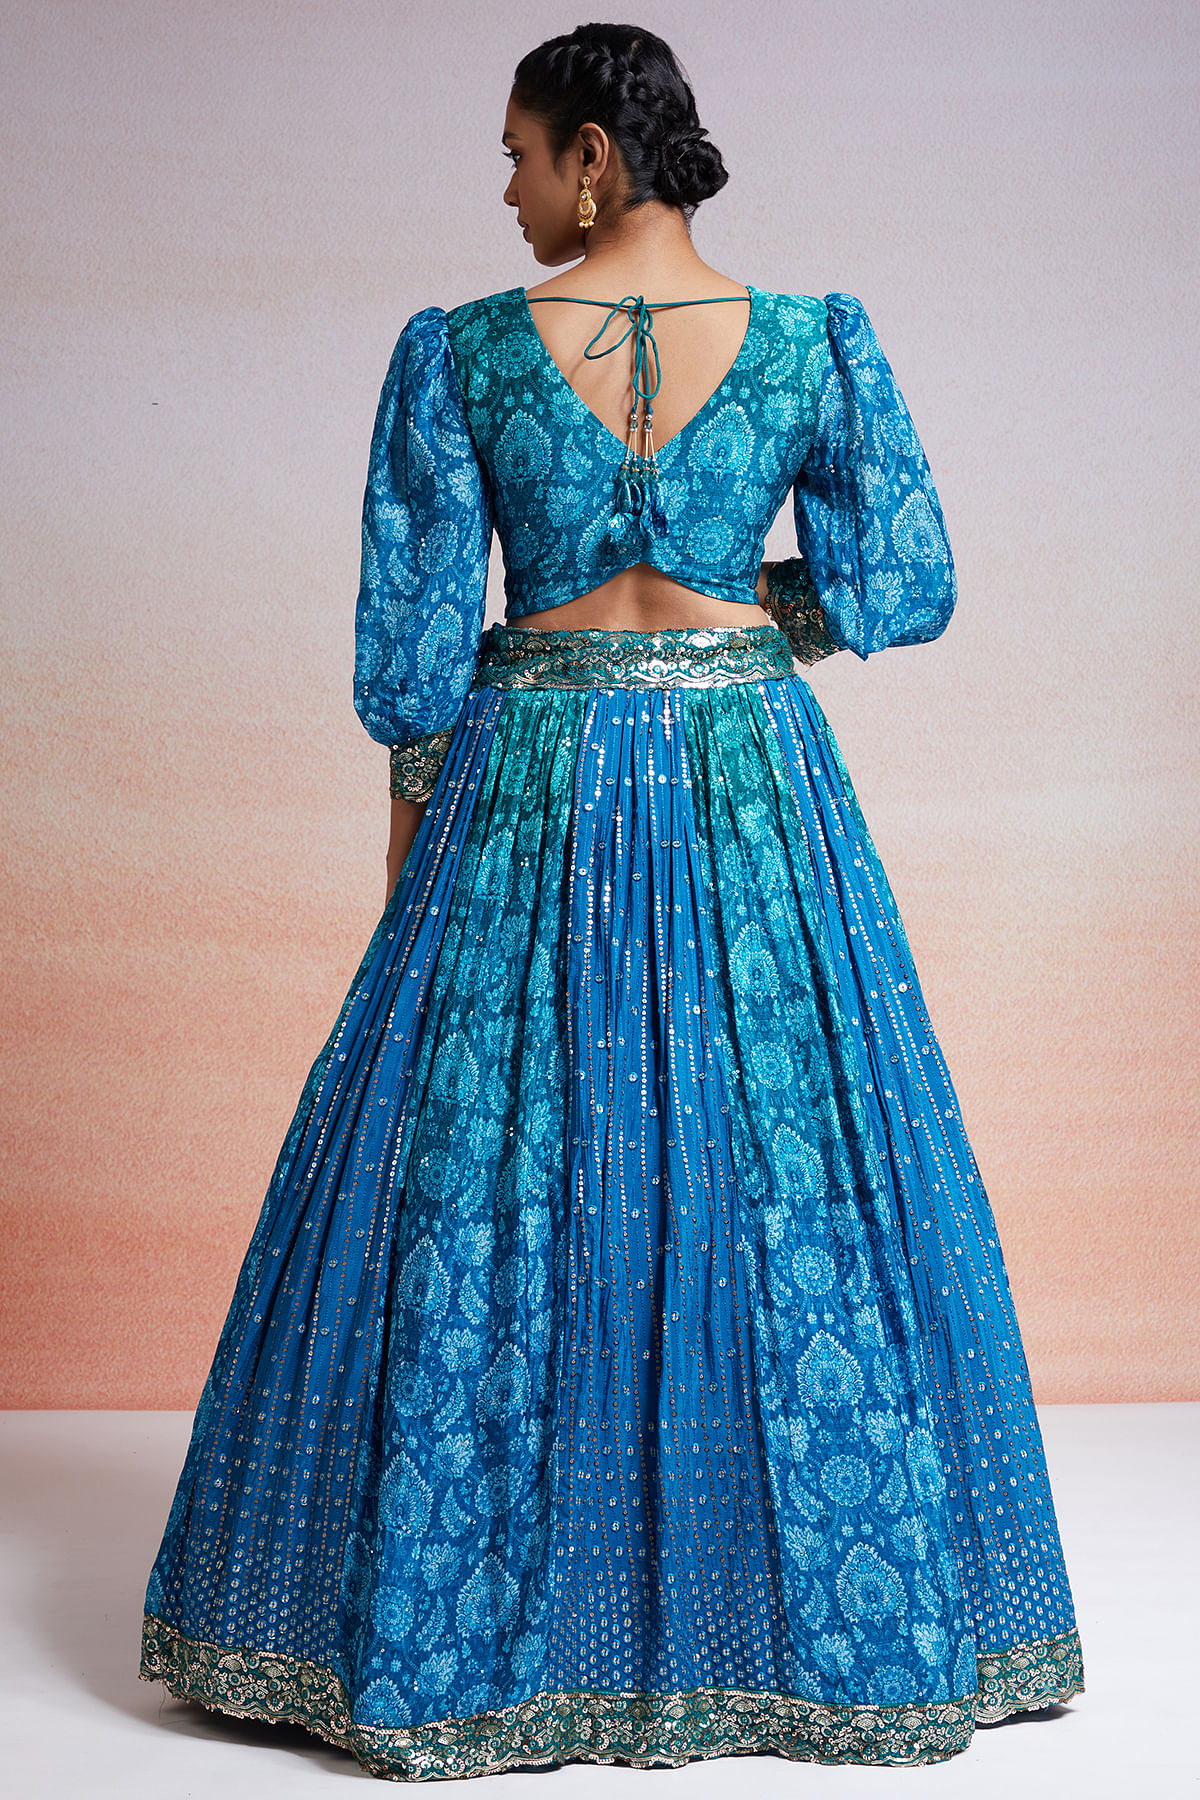 Classic Designer Lehenga Choli Bridal Indian Wedding Readymade Lahenga Choli  | eBay